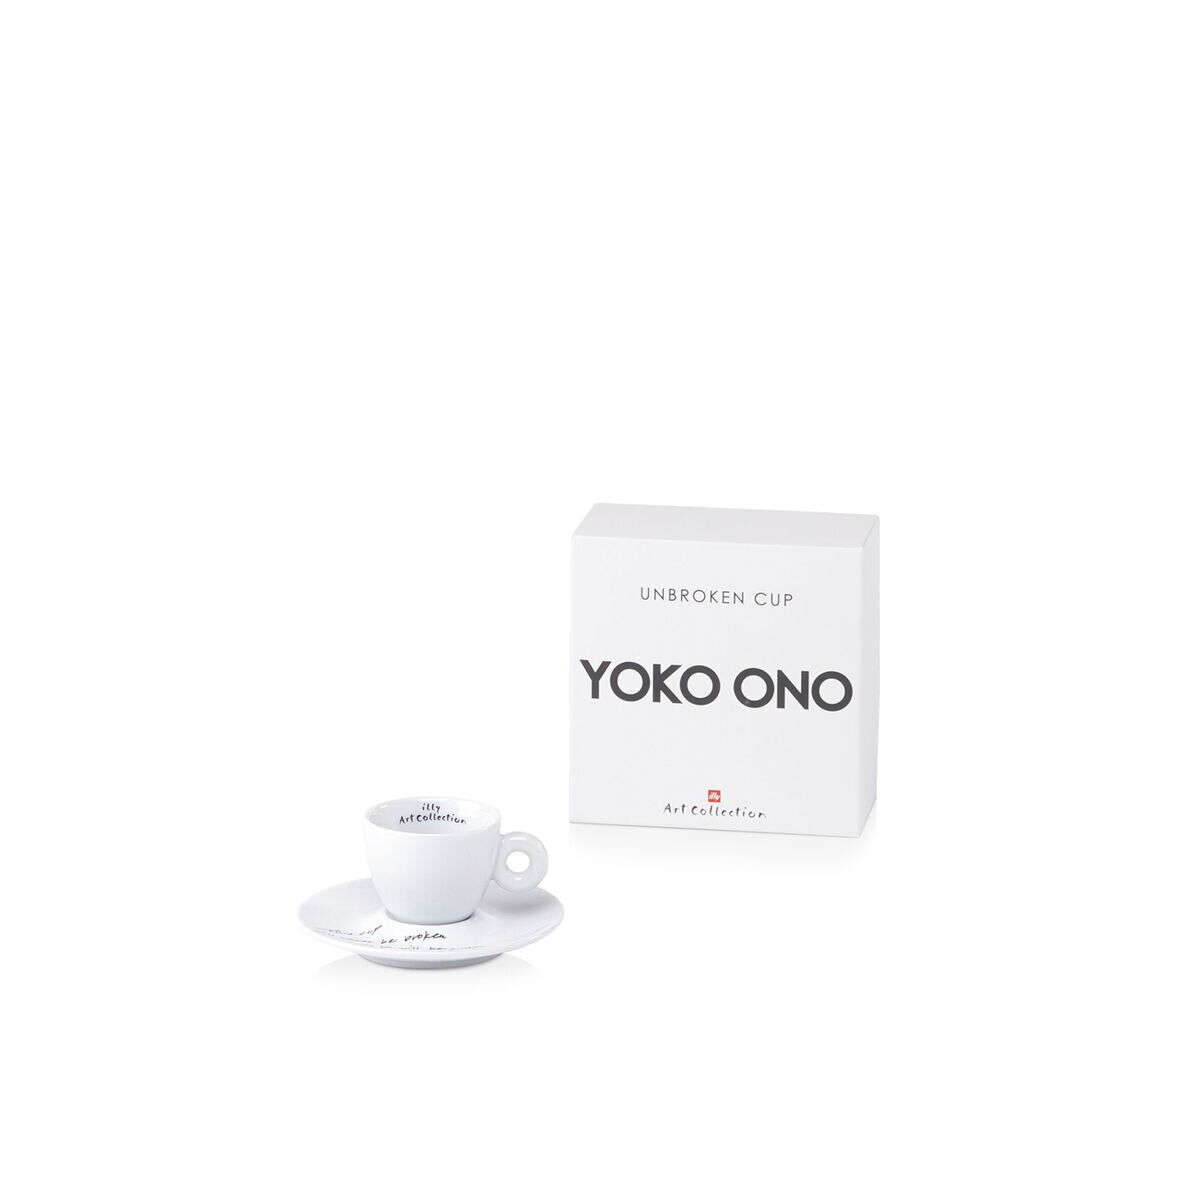 illy Yoko Ono UNBROKEN CUP - One 3oz Espresso Cup